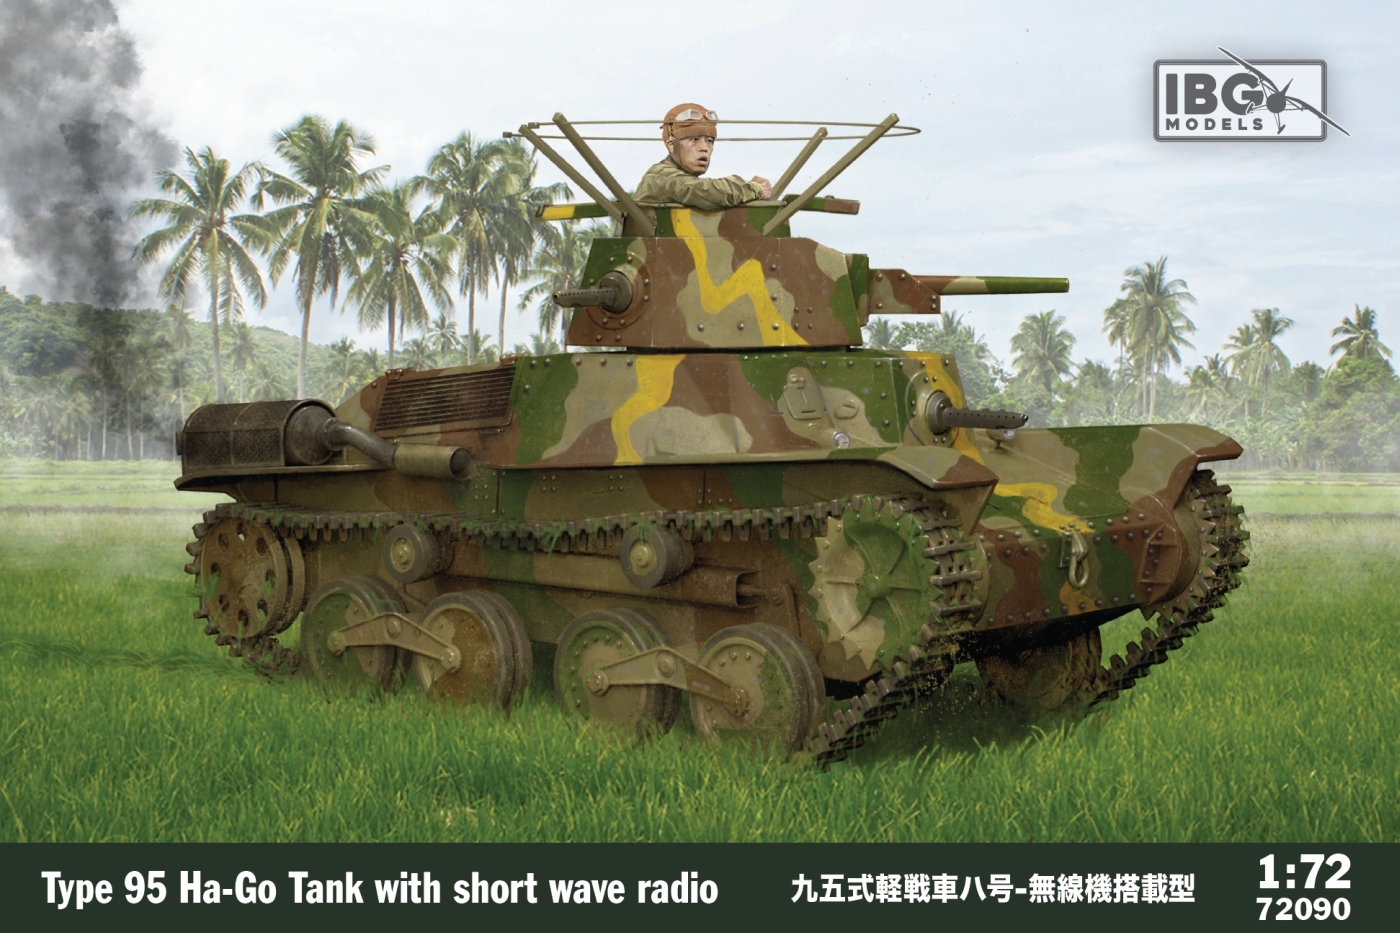 Type 95 Ha-Go with radio